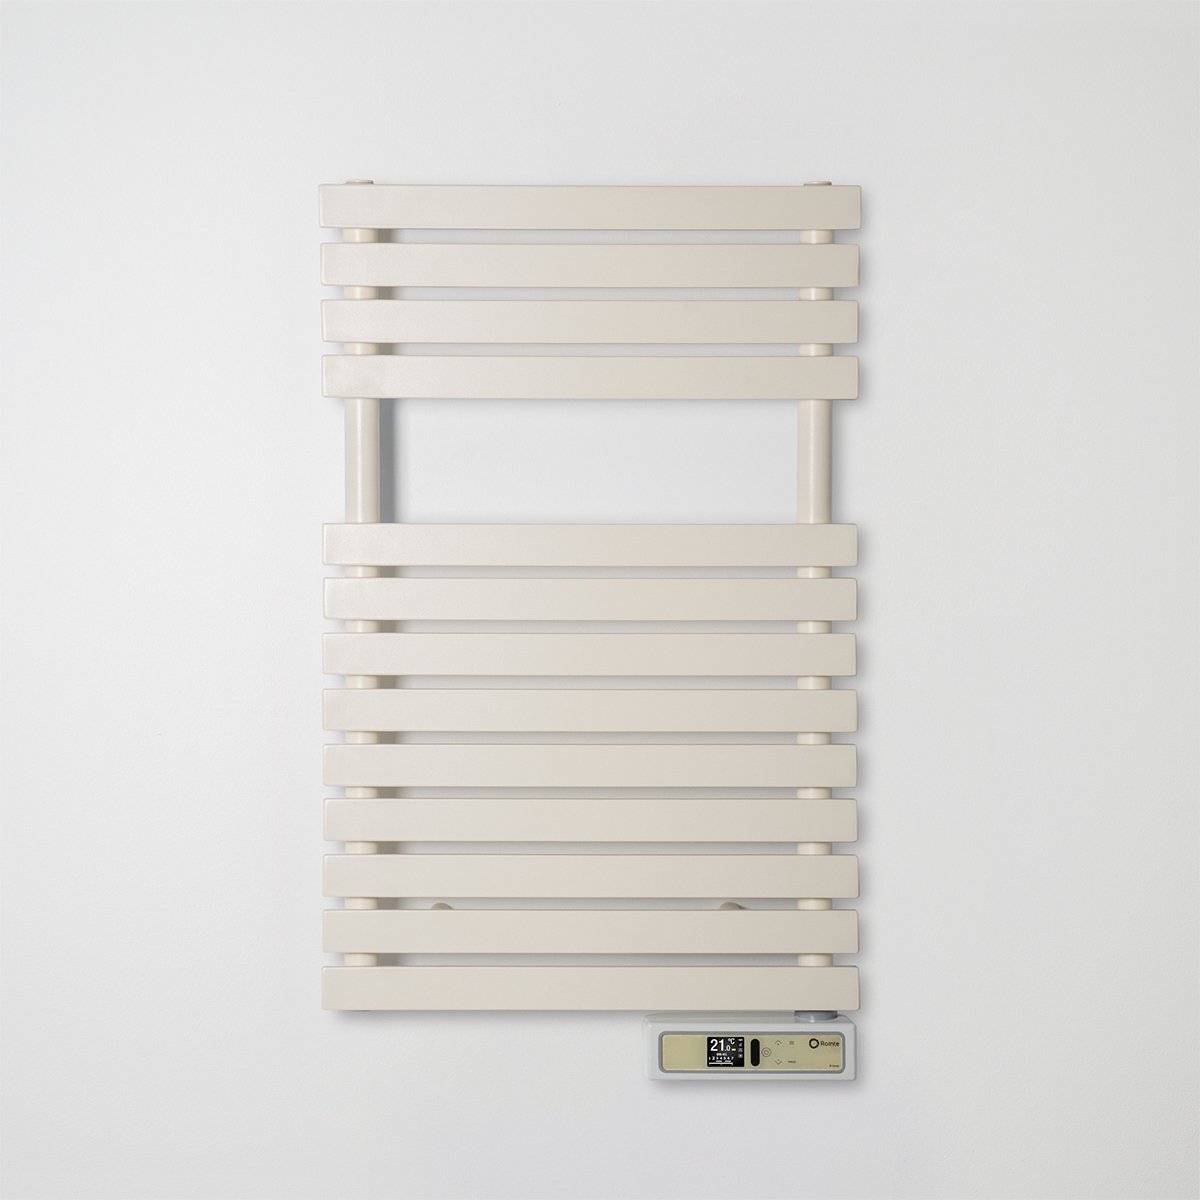 SERIE D Handdoek Radiator - Wit - Voor Badkamer 8-10m2 - 179,7cm hoog - WiFi